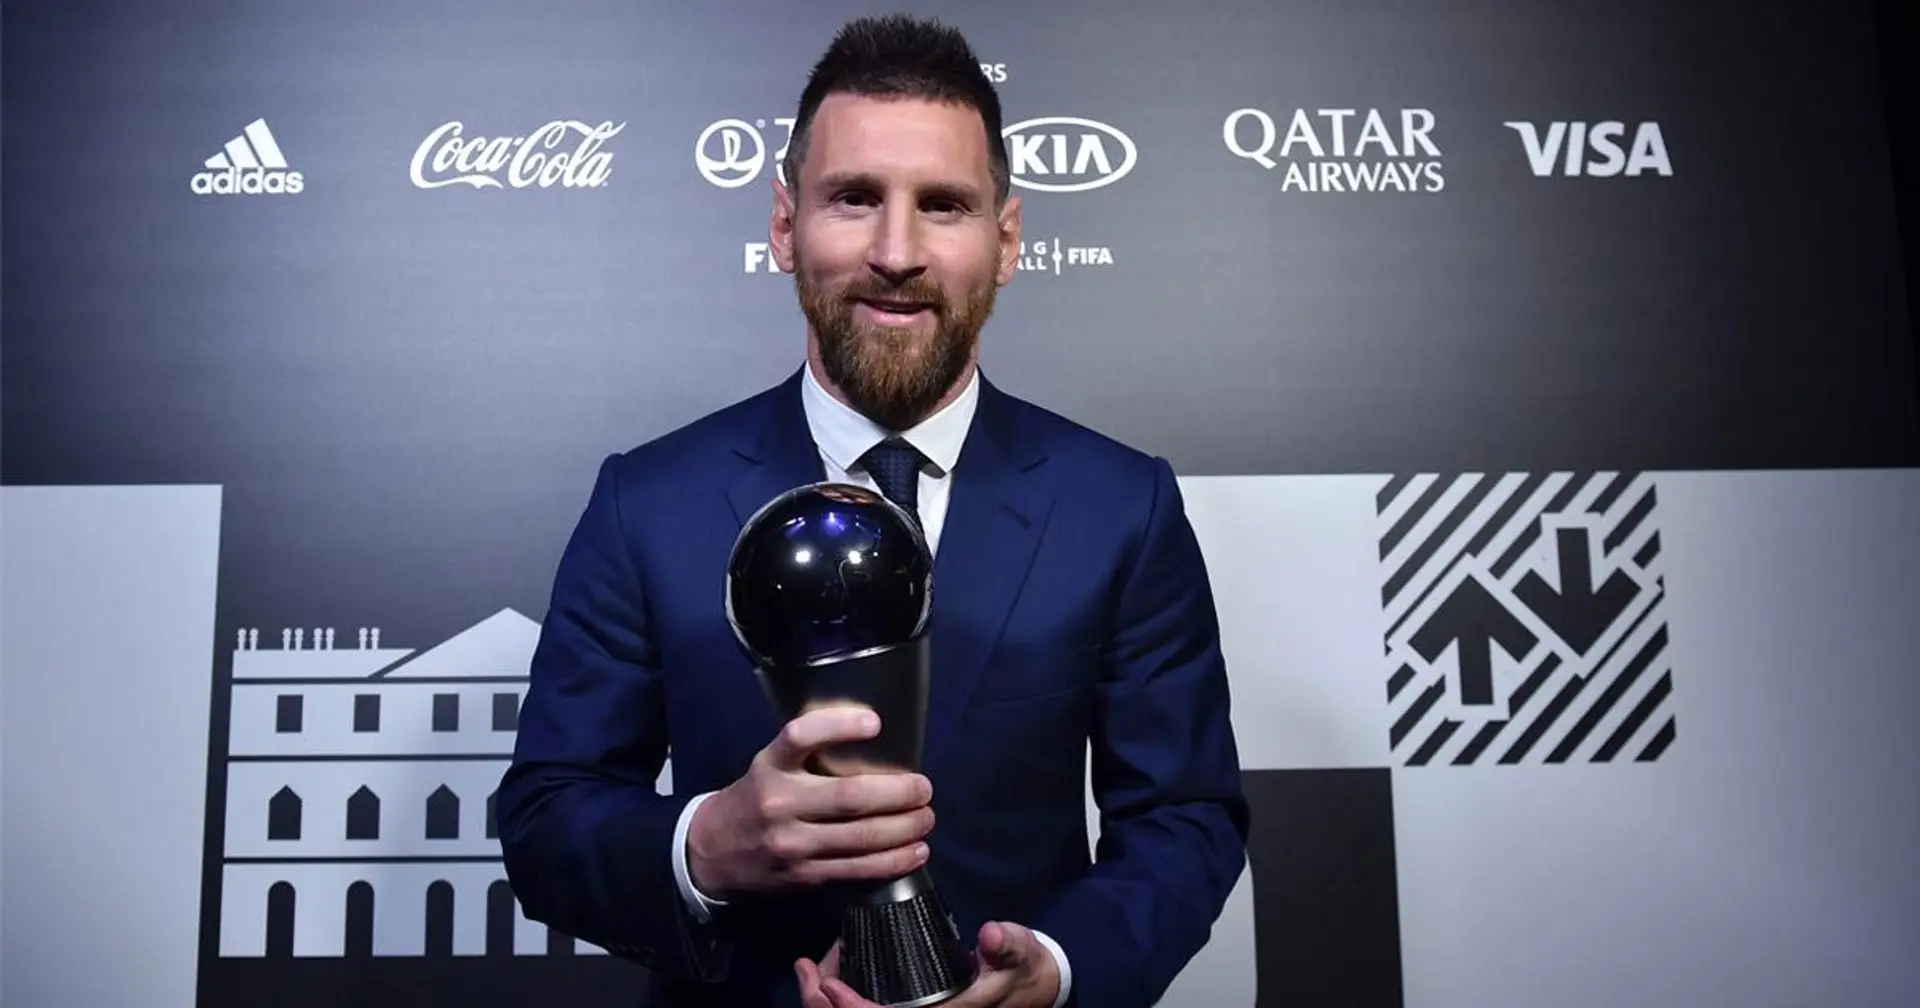 Messi et Ter Stegen nommés pour le prix "The Best" de la FIFA